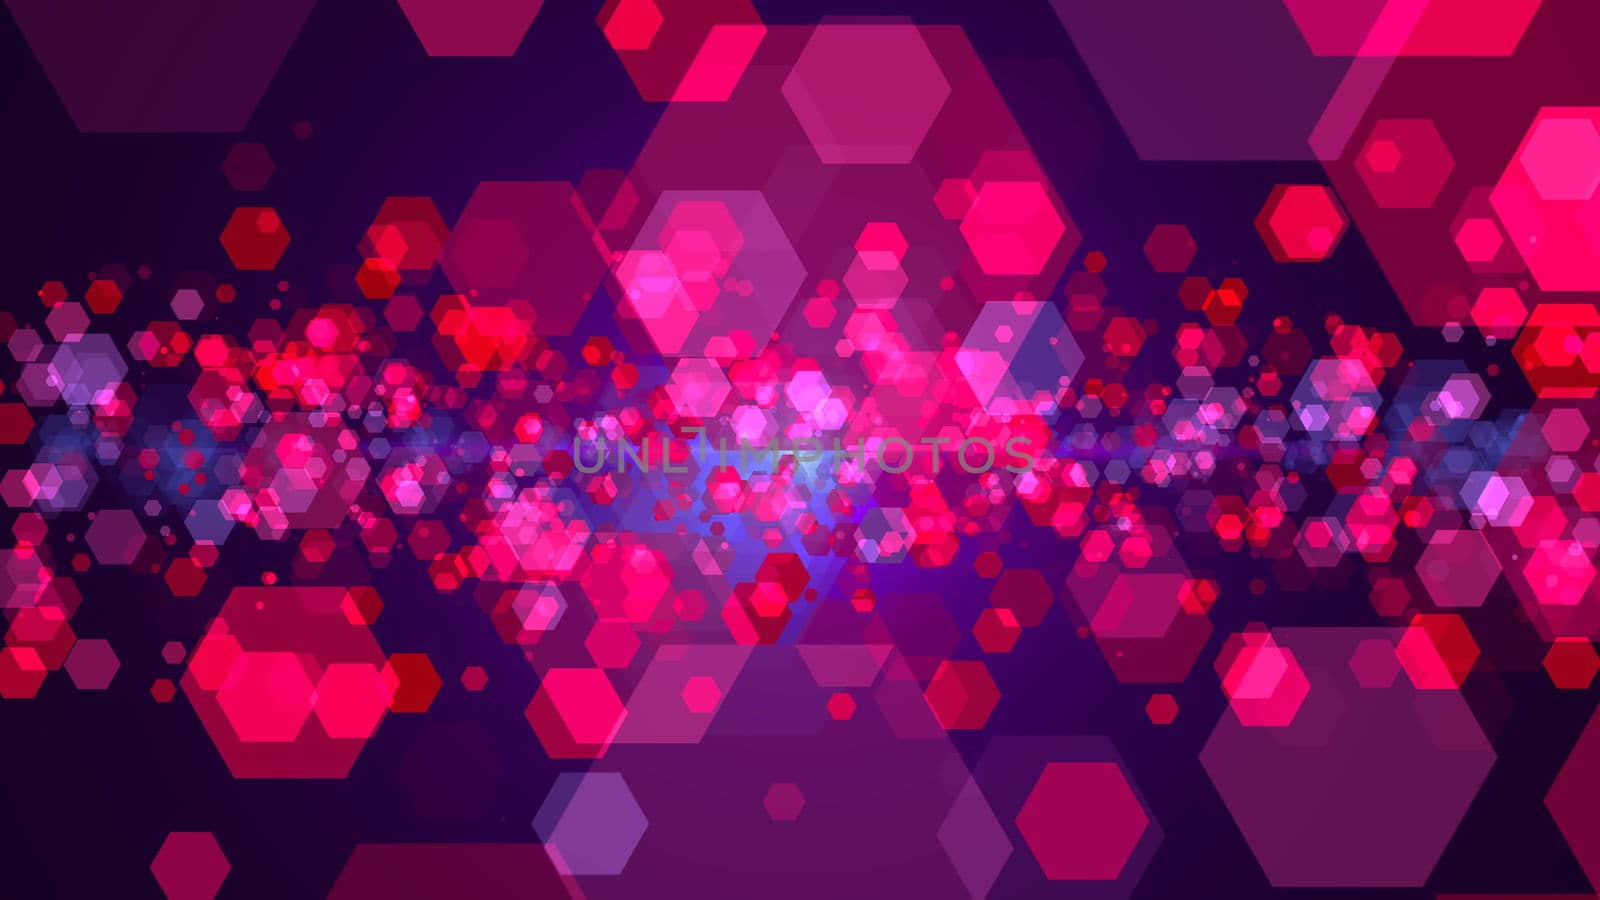 Hexagonal abstract background. Digital illustration. Digital illustration. 3d rendering